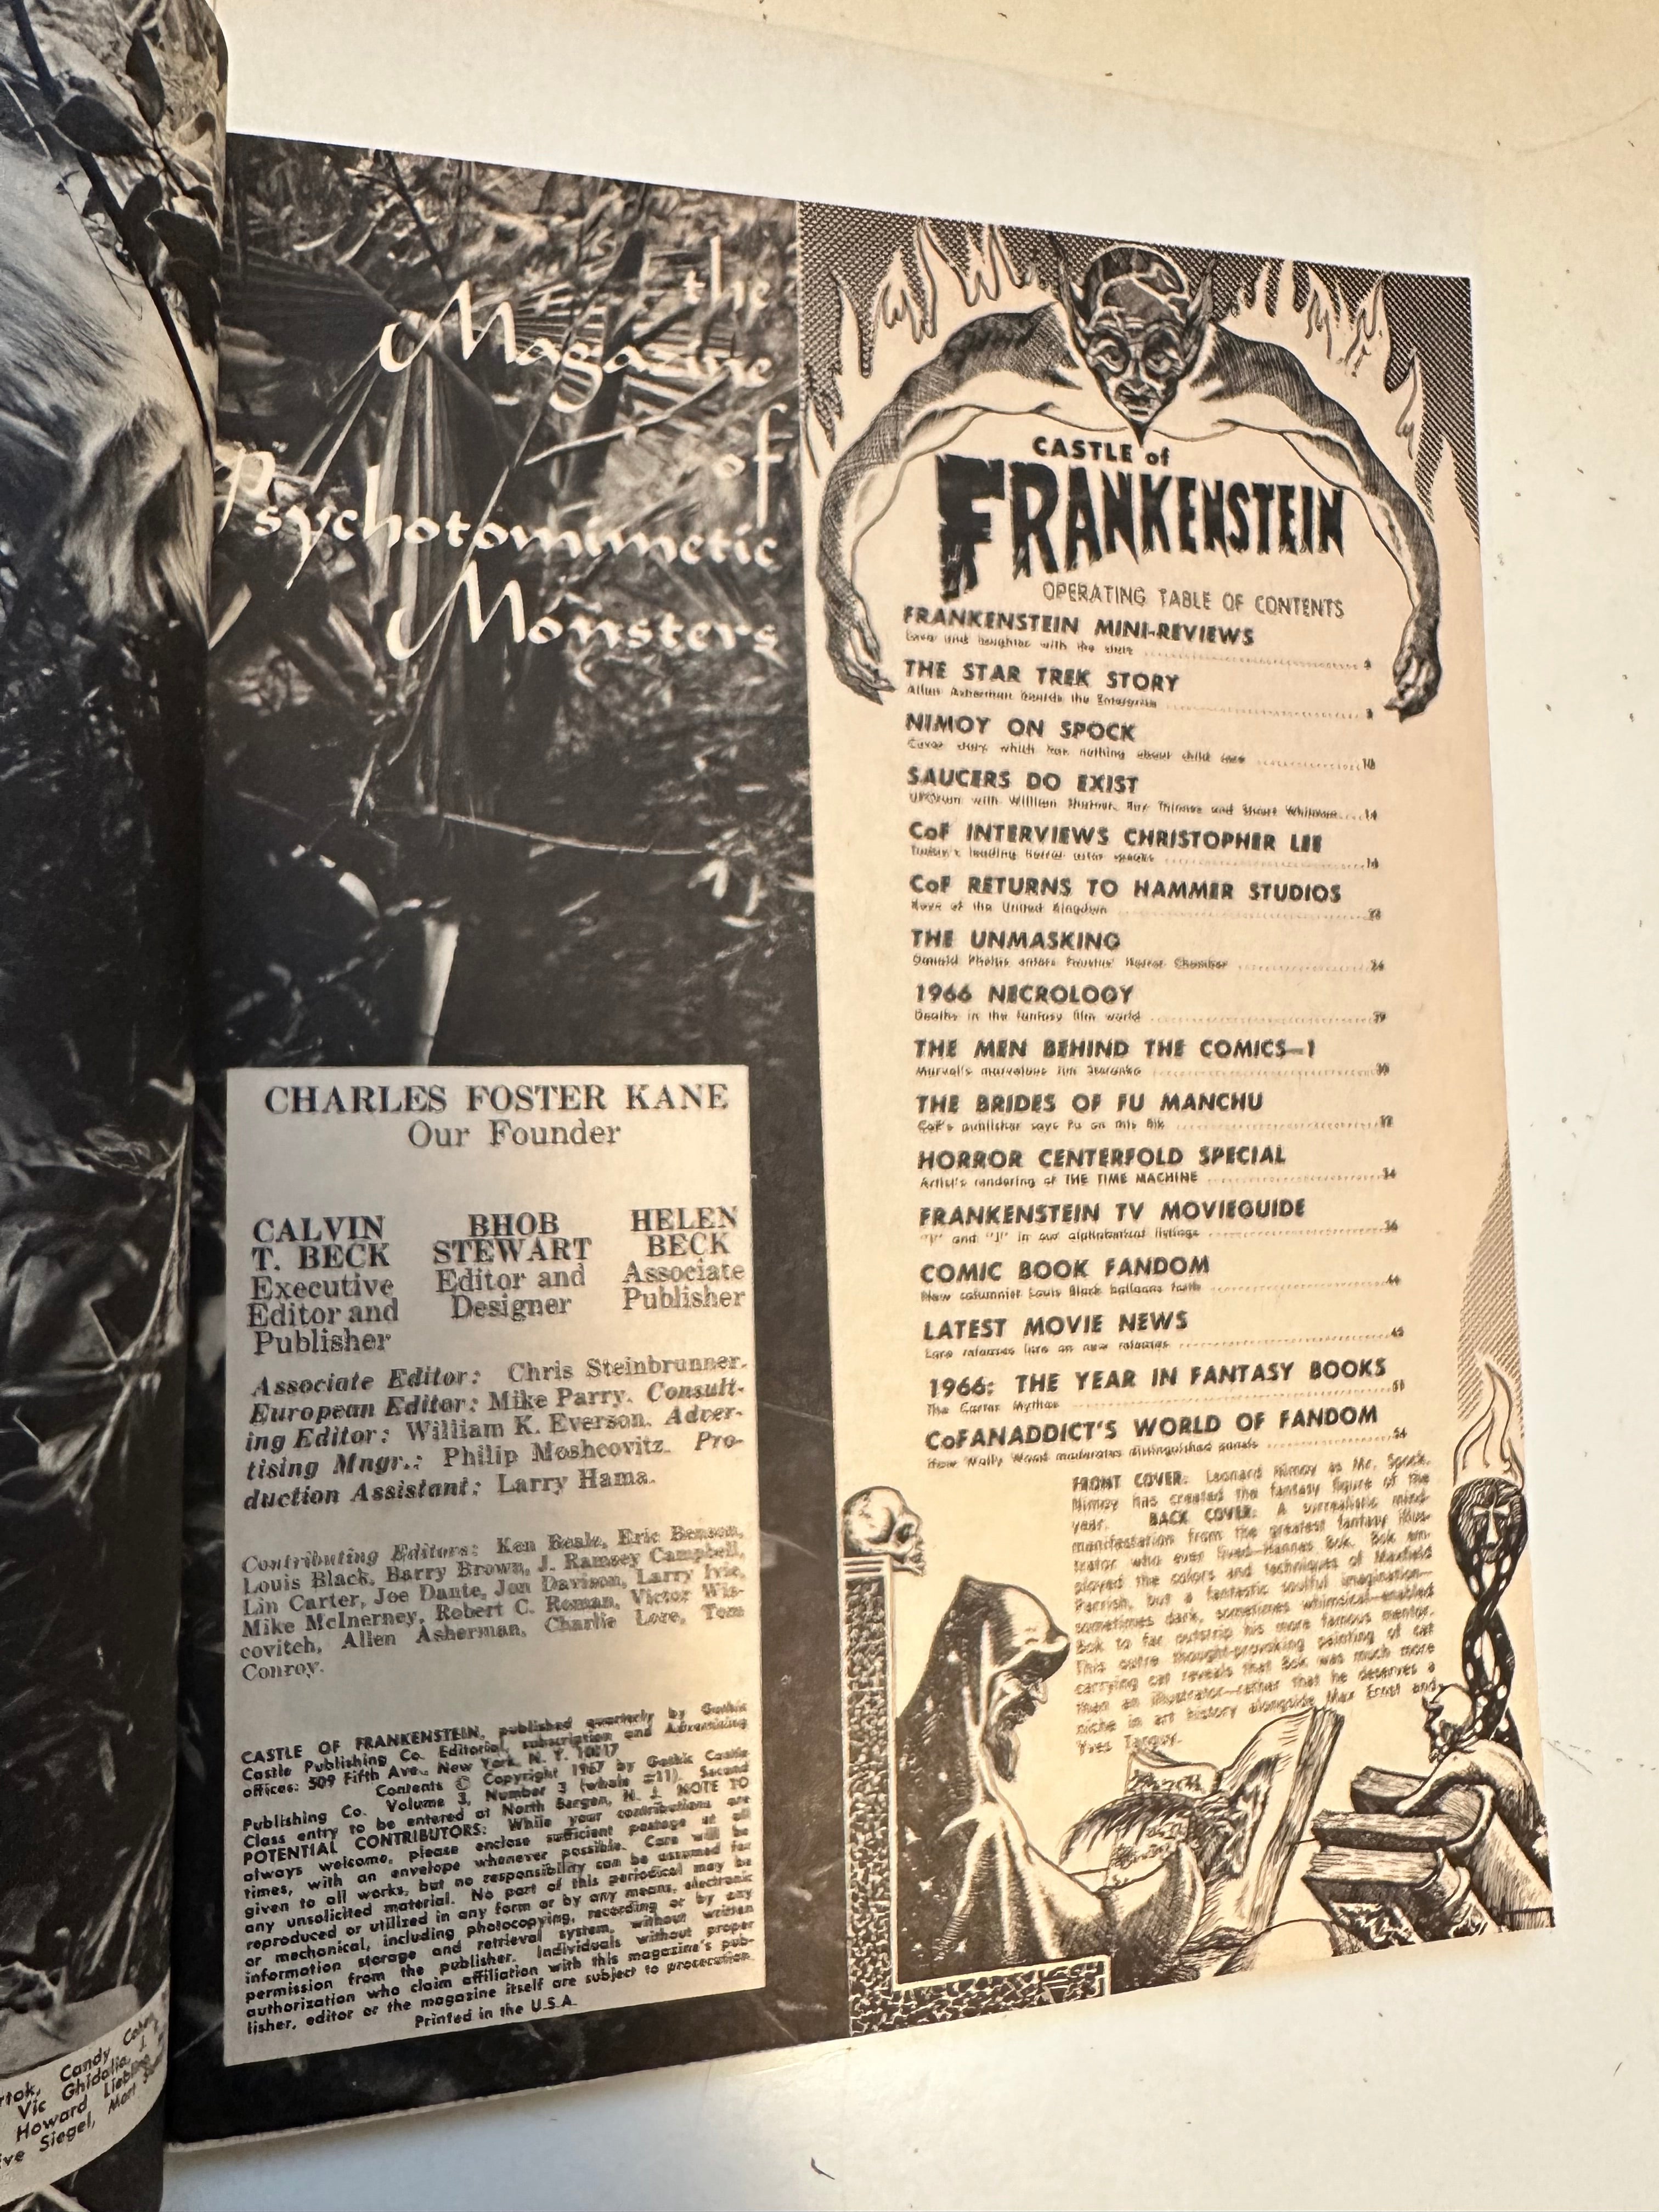 Castle of Frankenstein #11 high grade condition movie/TV magazine 1967